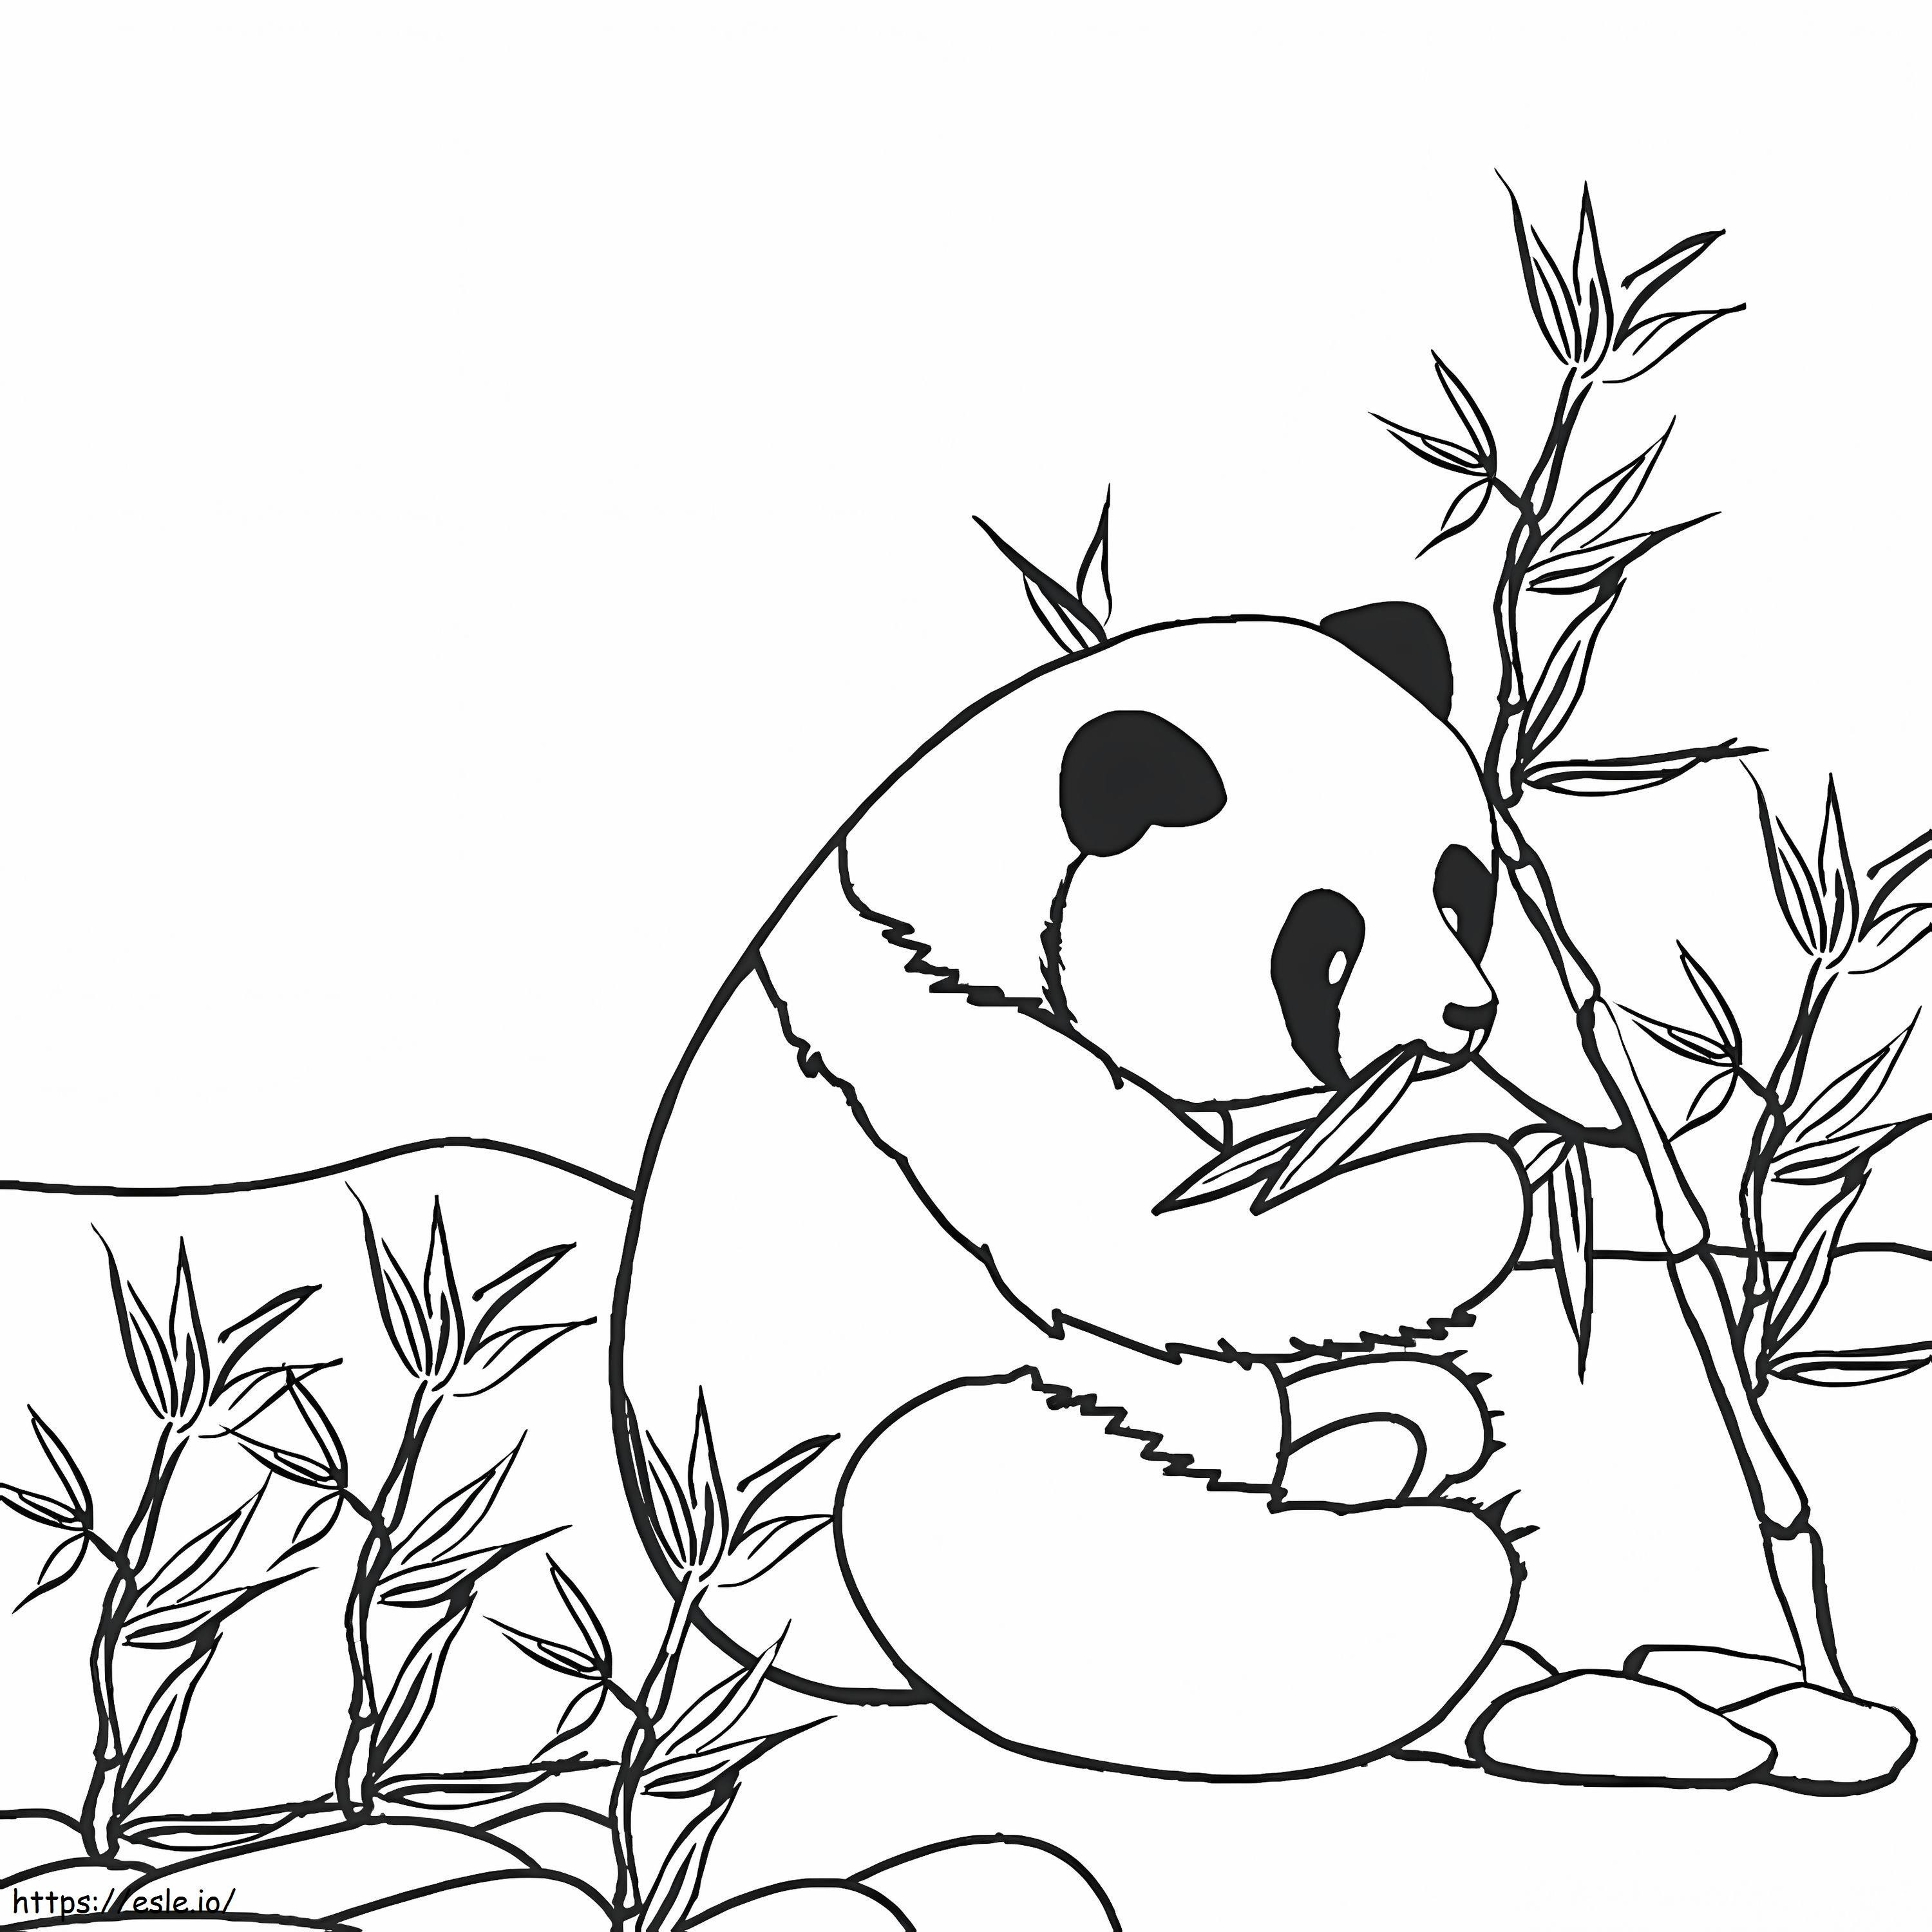 Kleine Panda die Bamboe eet kleurplaat kleurplaat